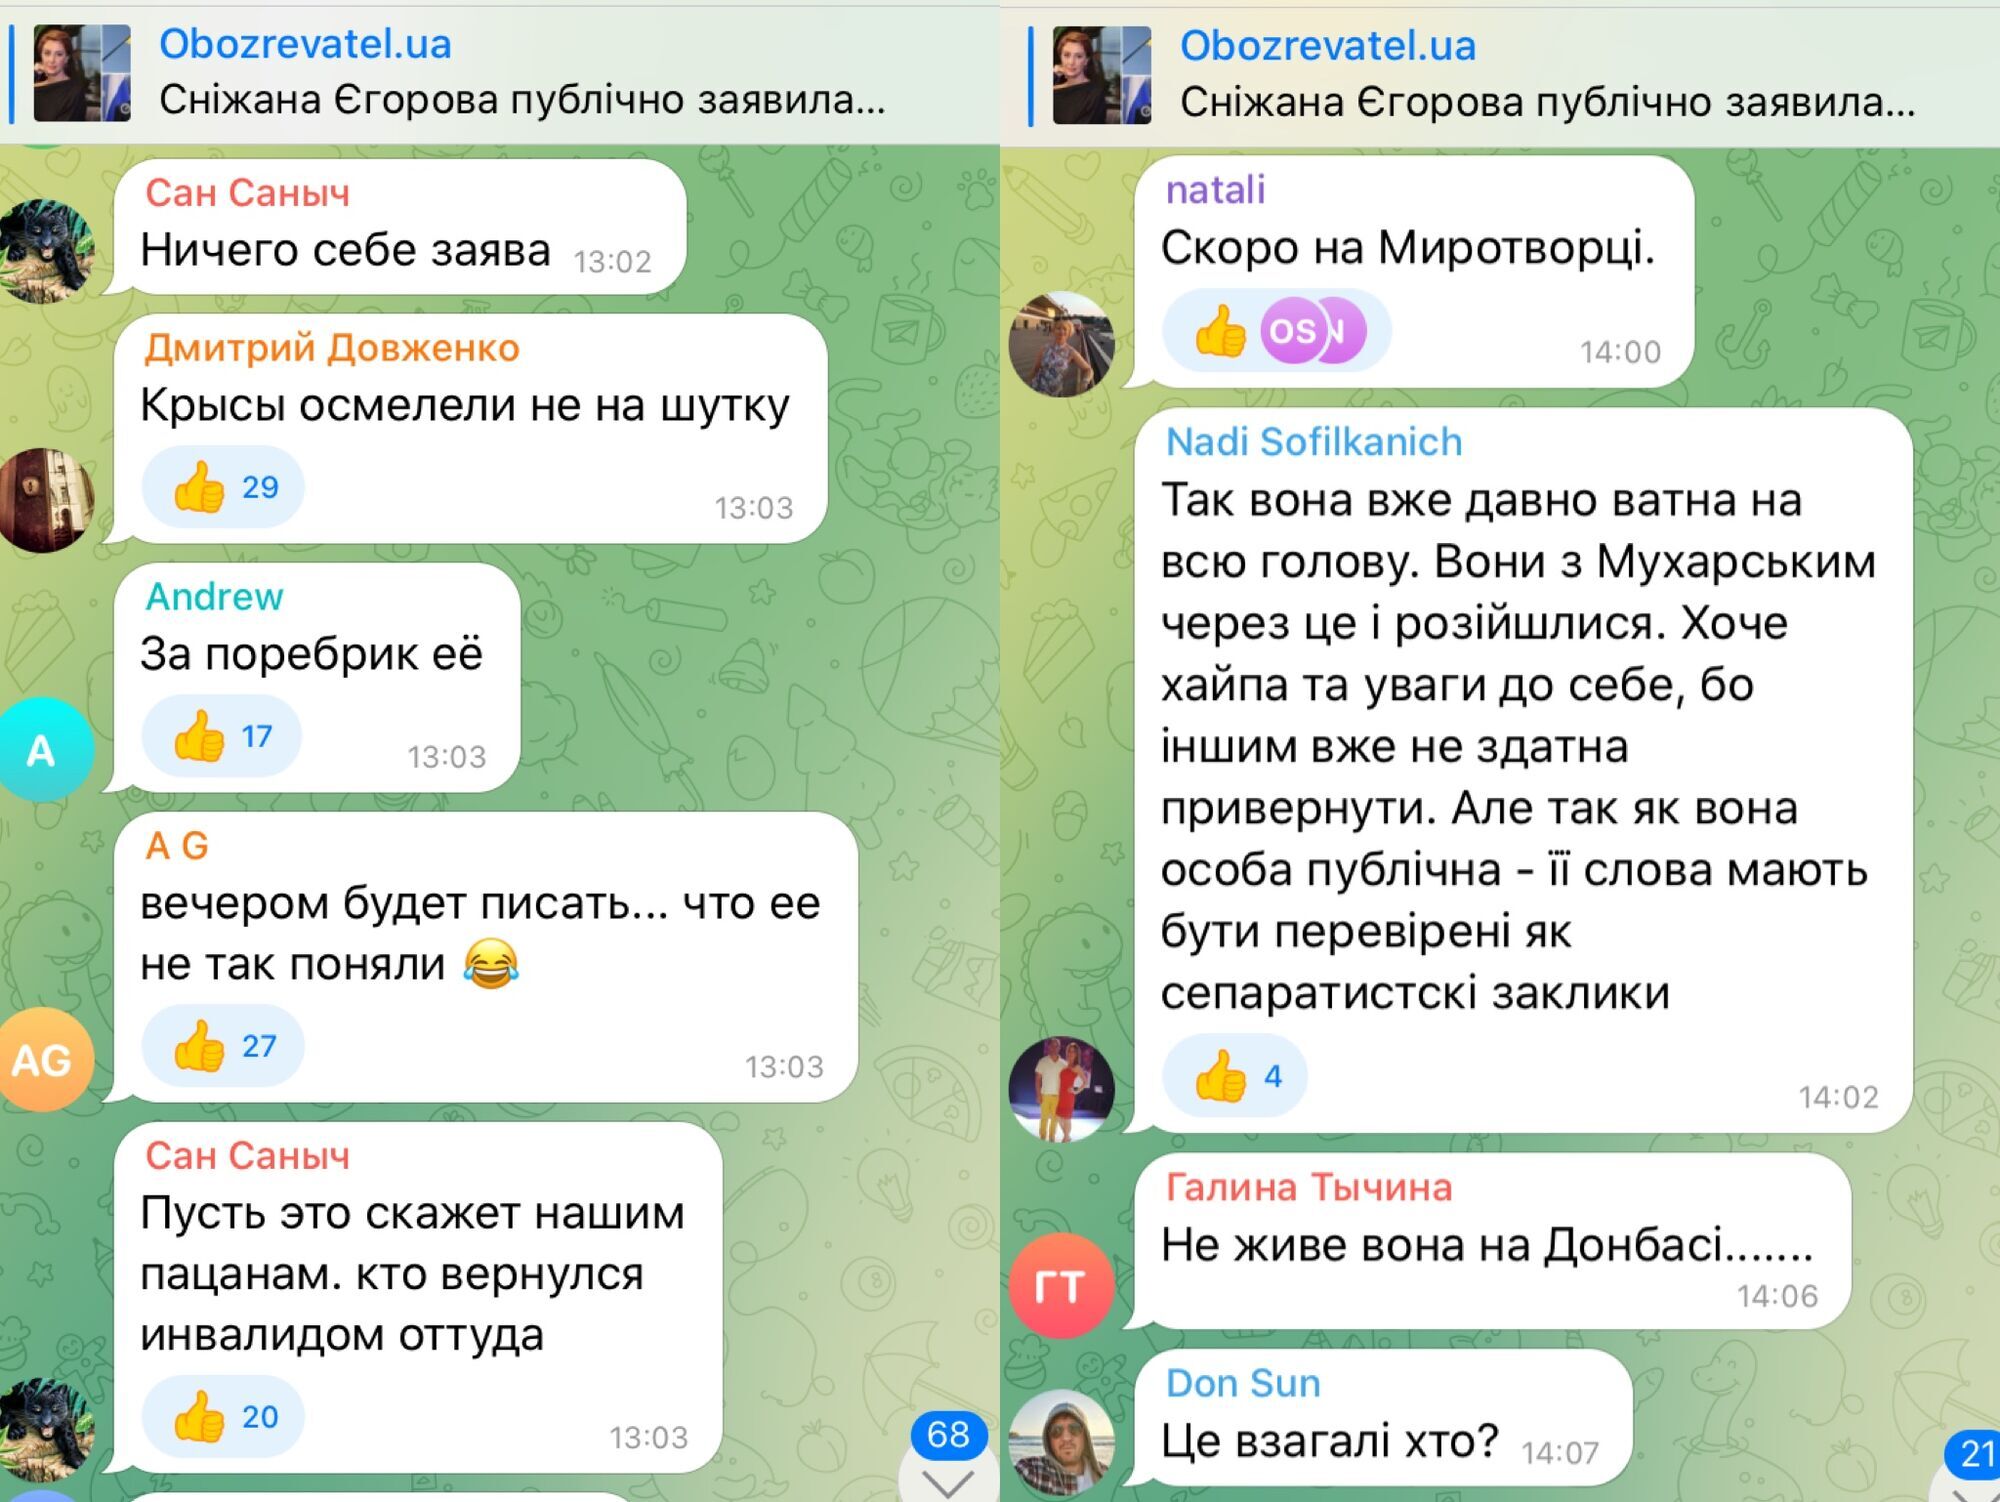 Комментарии под новостью о заявлении Снежаны Егоровой